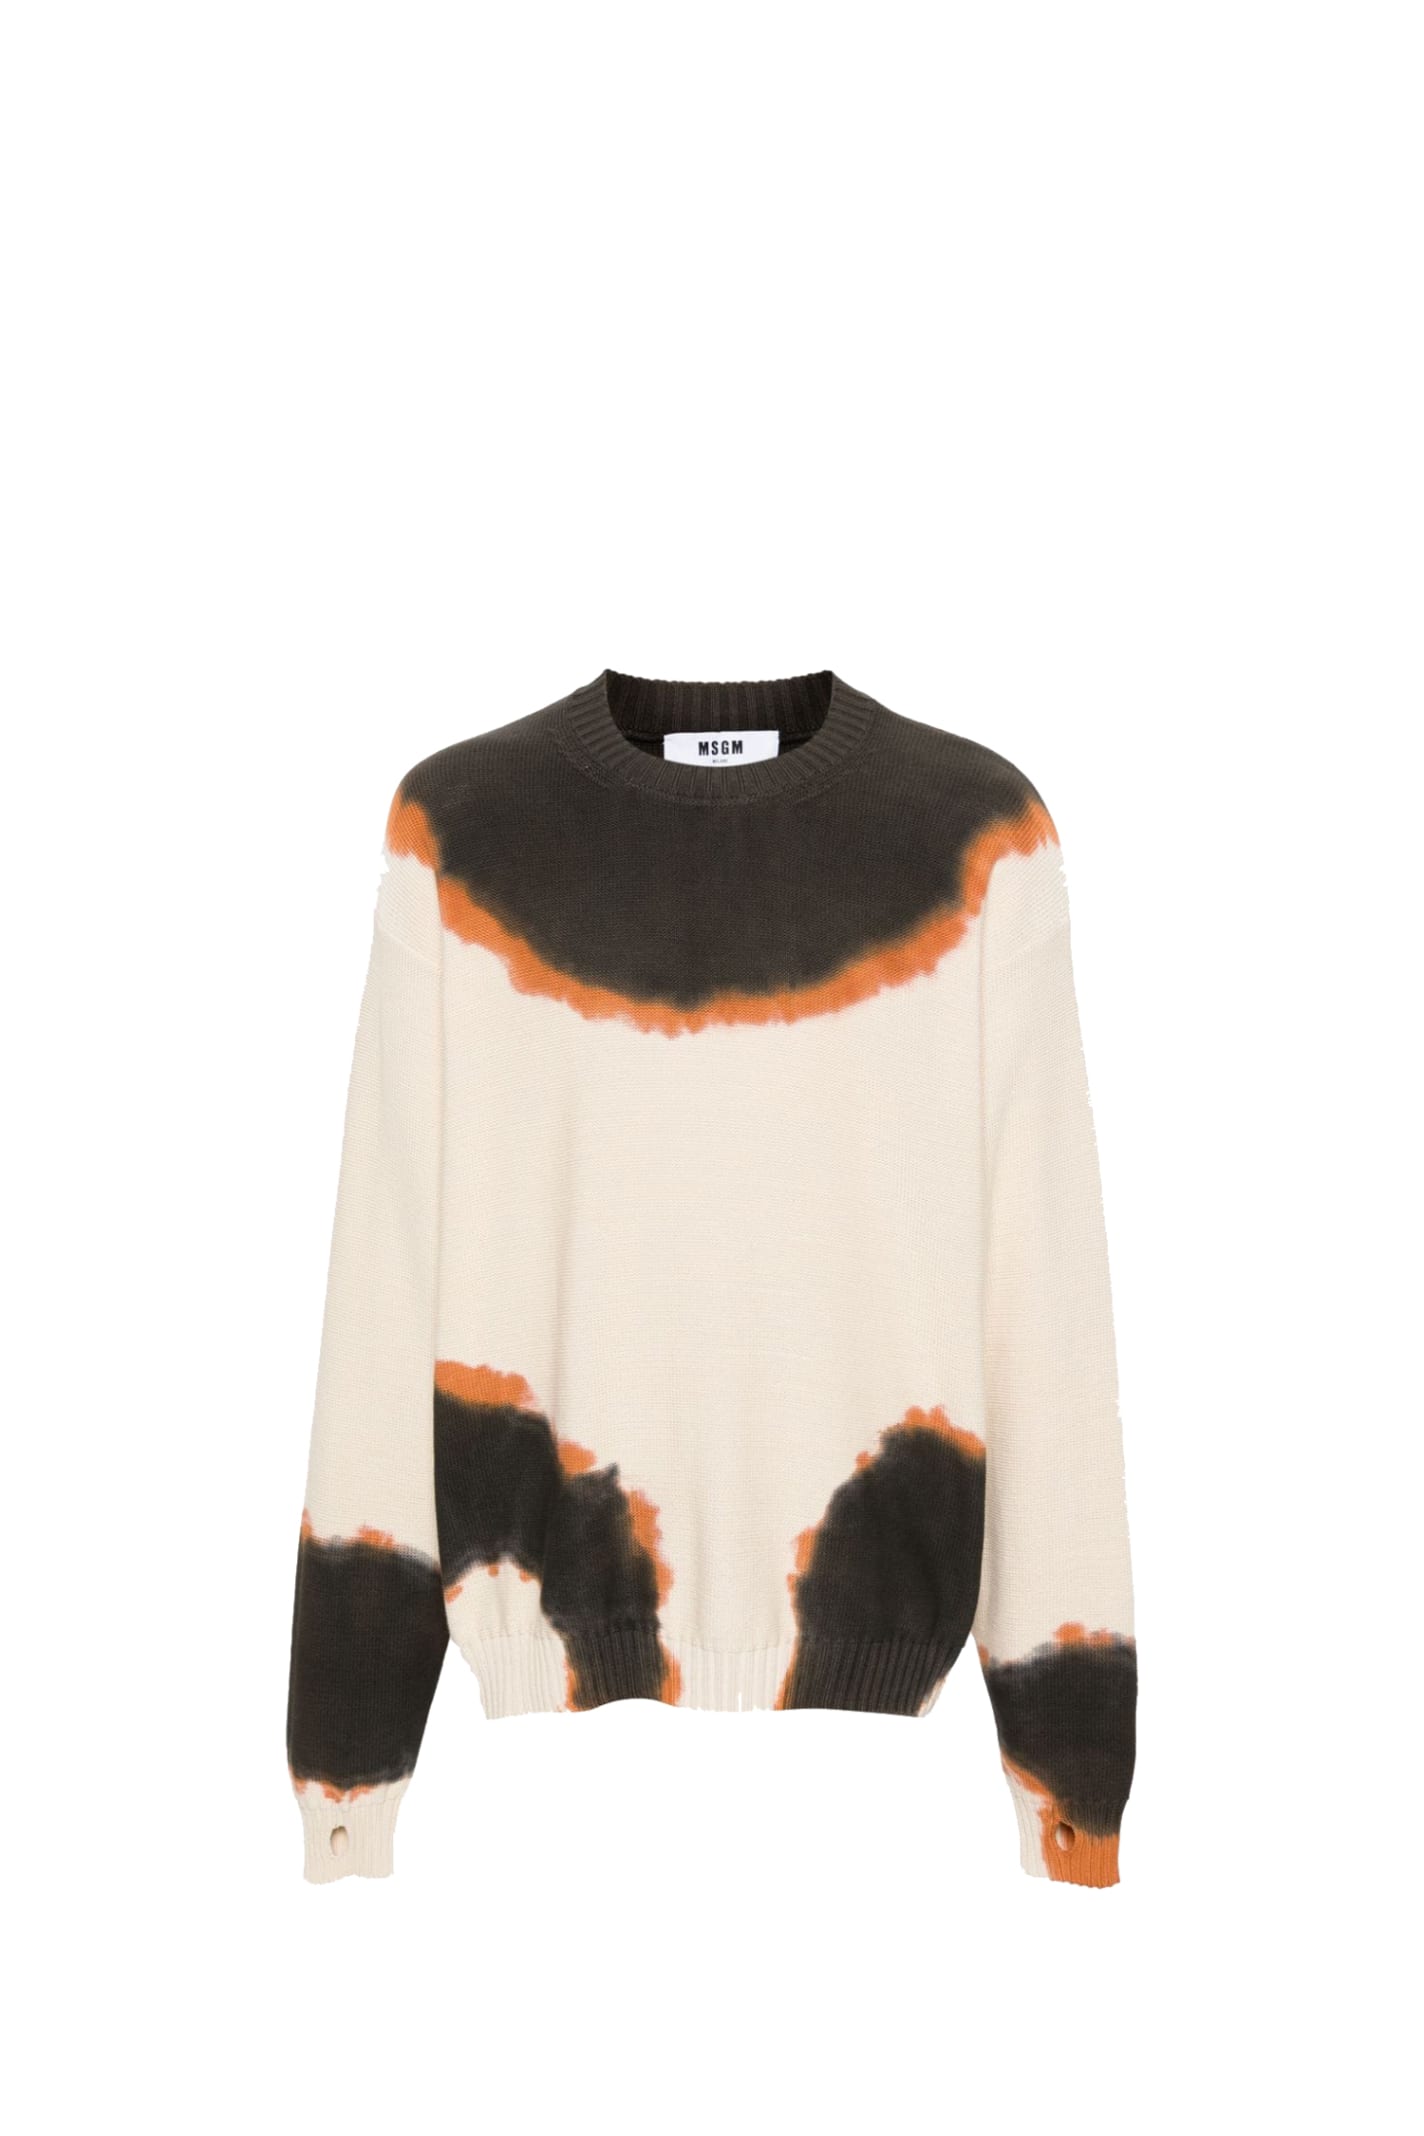 Shop Msgm Sweater In Multicolour